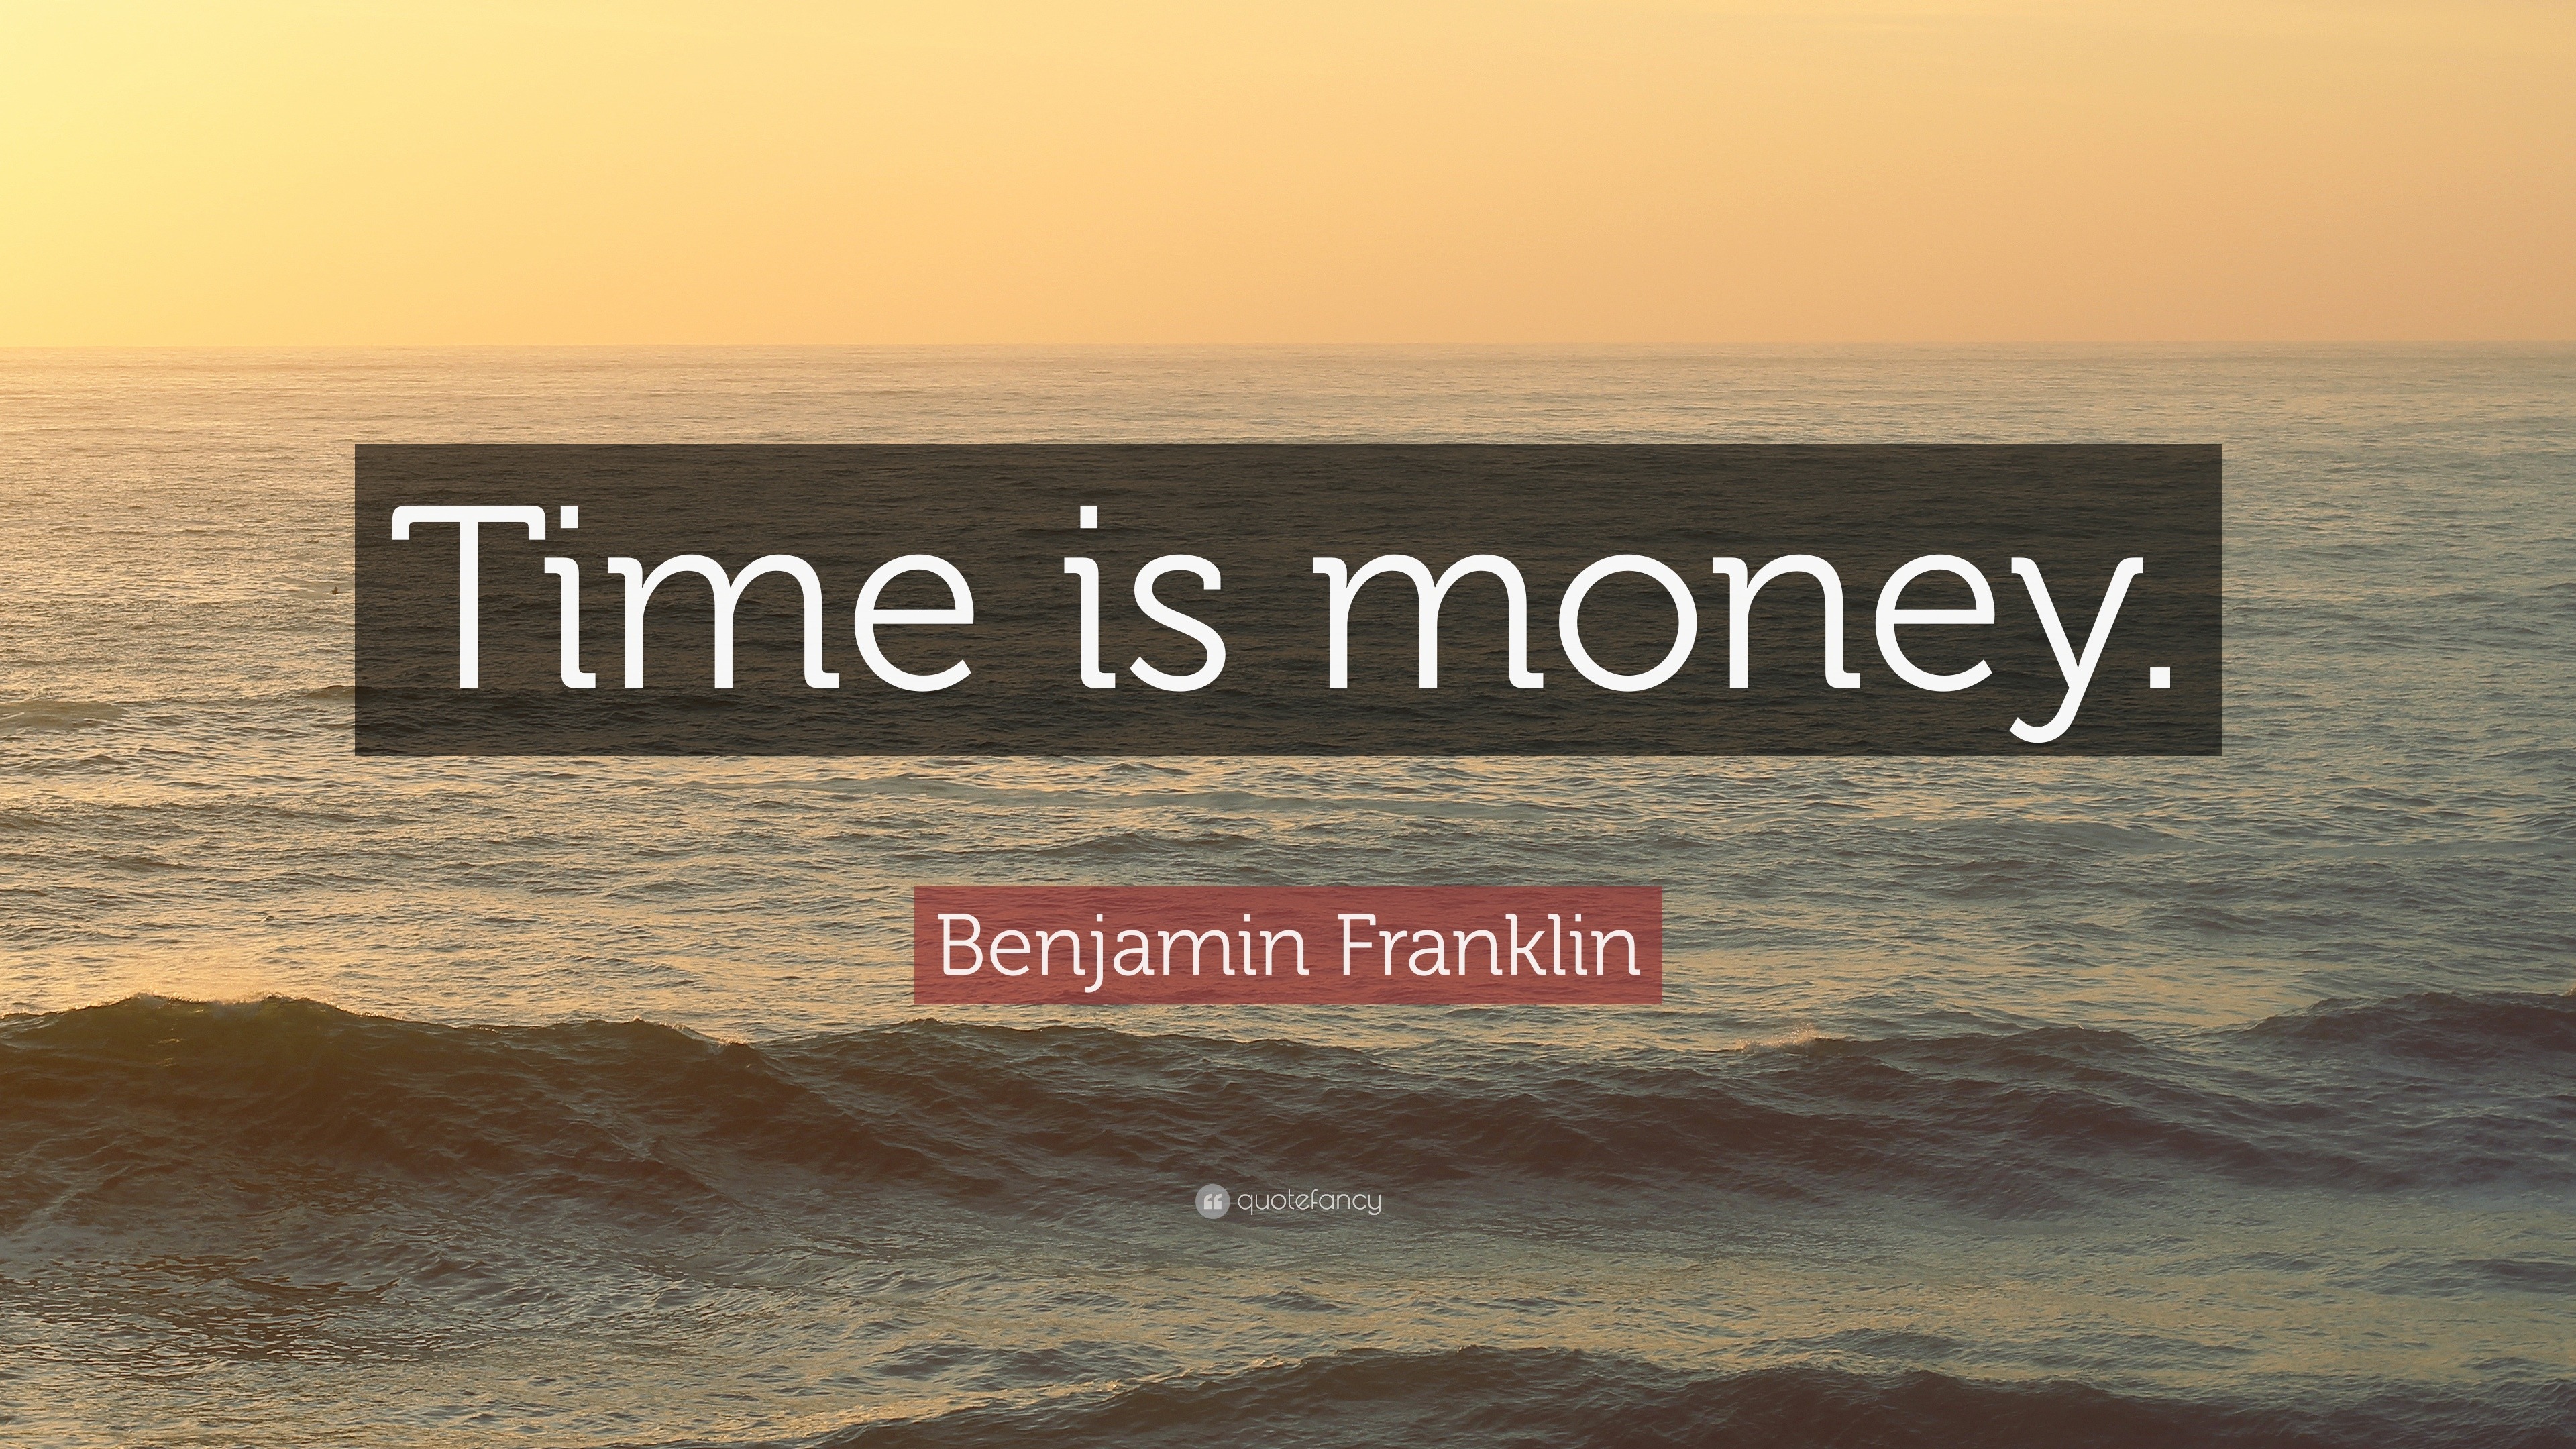 Benjamin Franklin Quote: "Time is money." (12 wallpapers) - Quotefancy